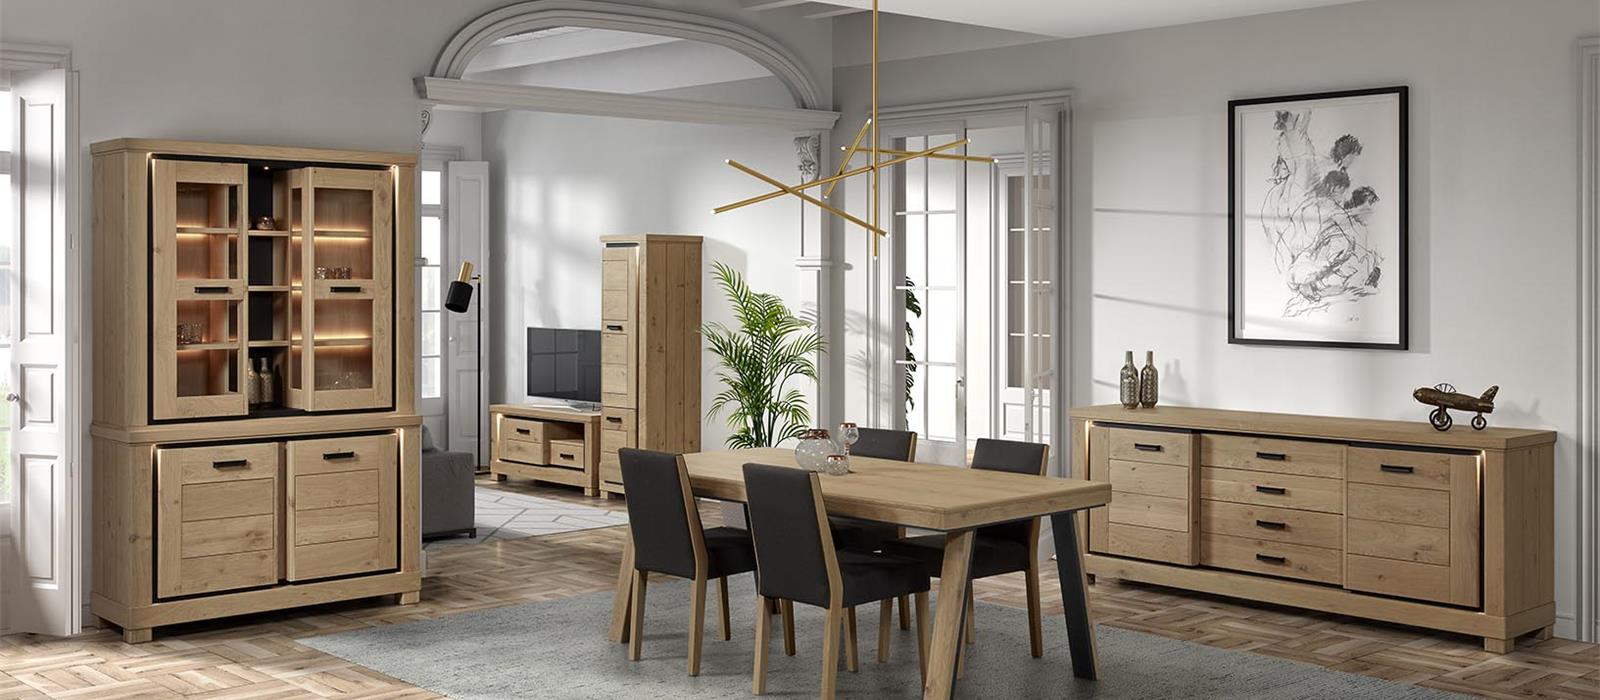 Dublin - Belgian oak furniture